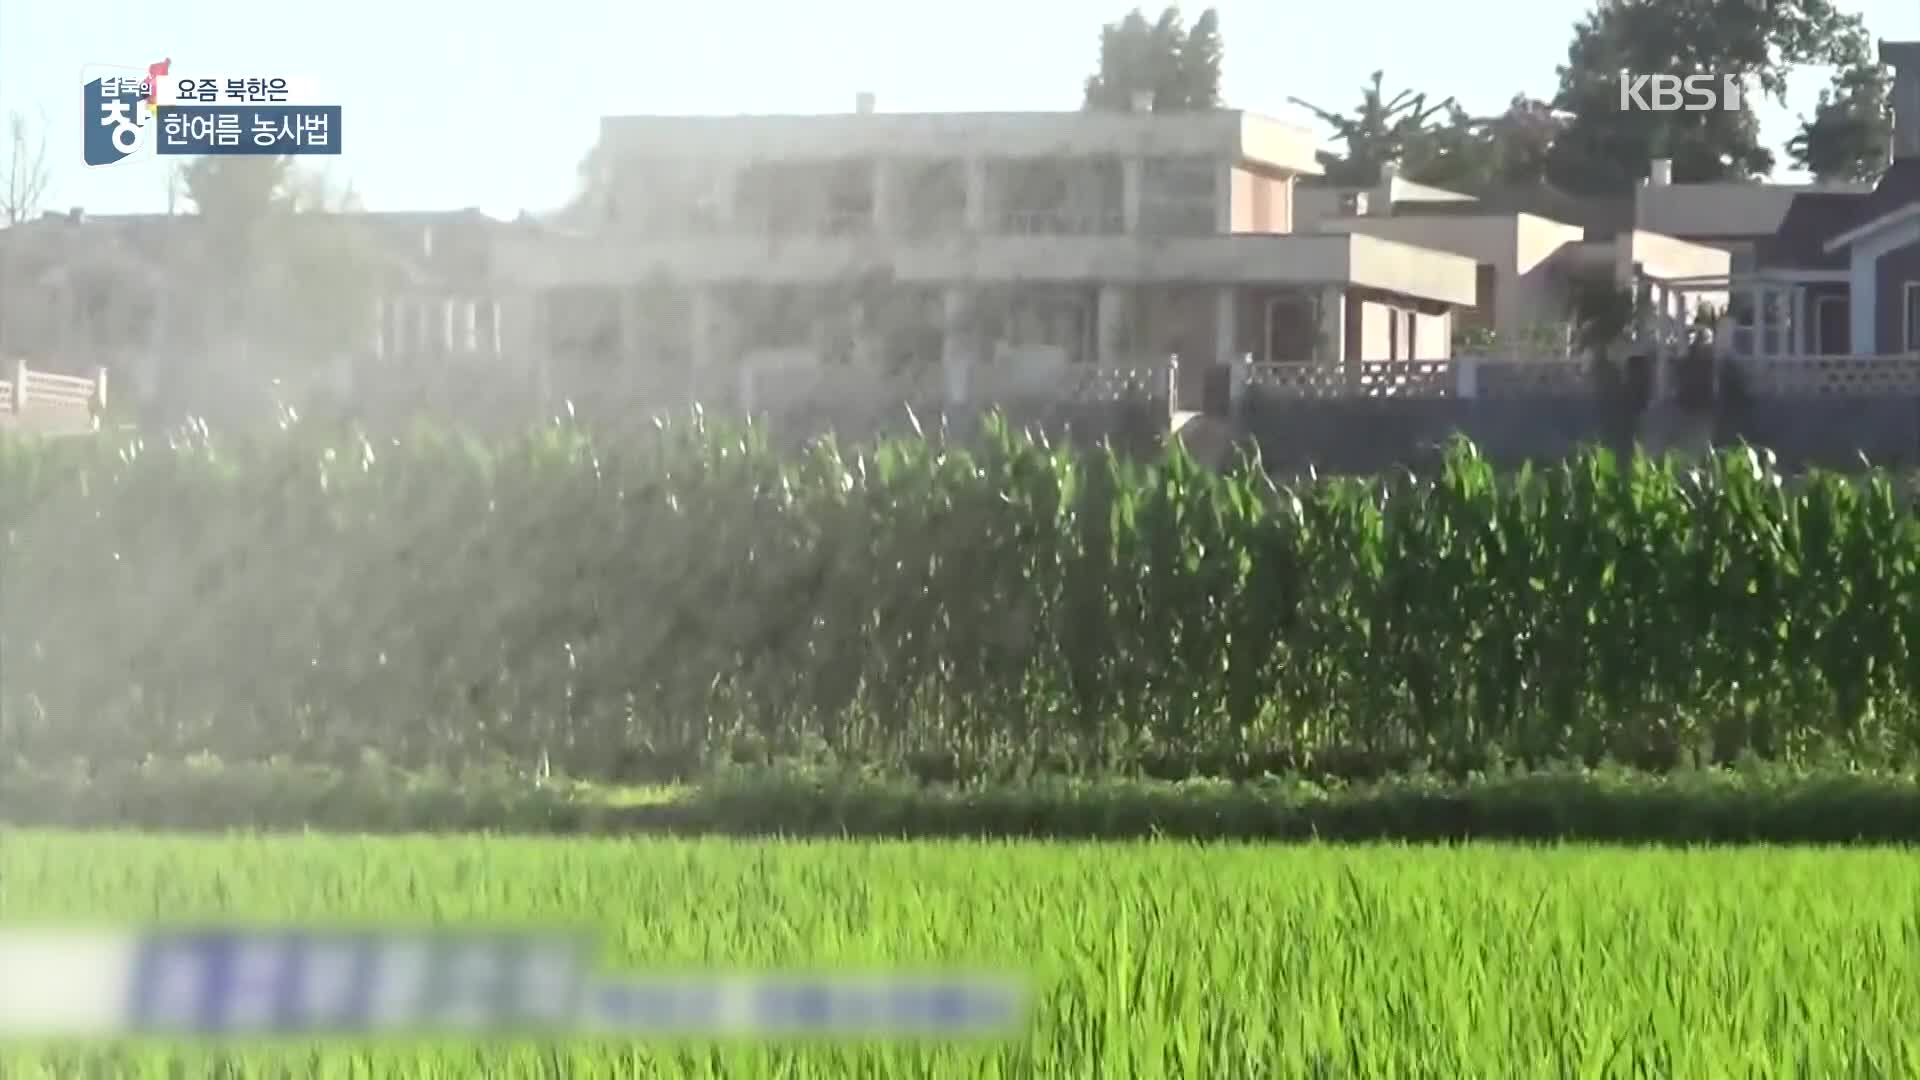 [요즘 북한은] 농사 망칠까 걱정…무더위 농사법 외